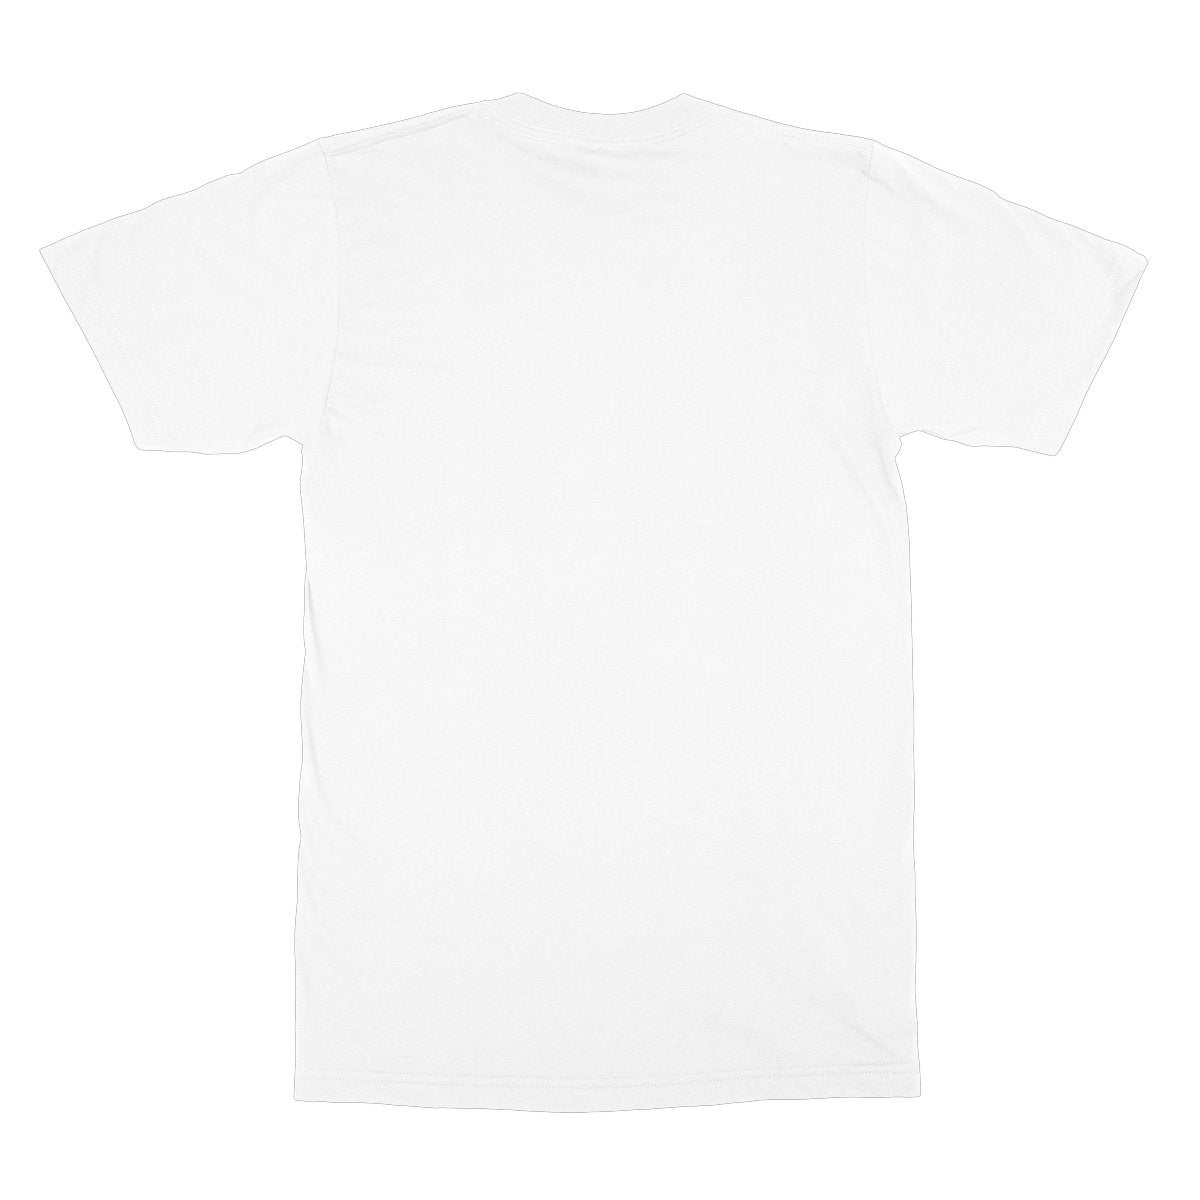 Unisex Softstyle T-Shirt - 'S'up?'